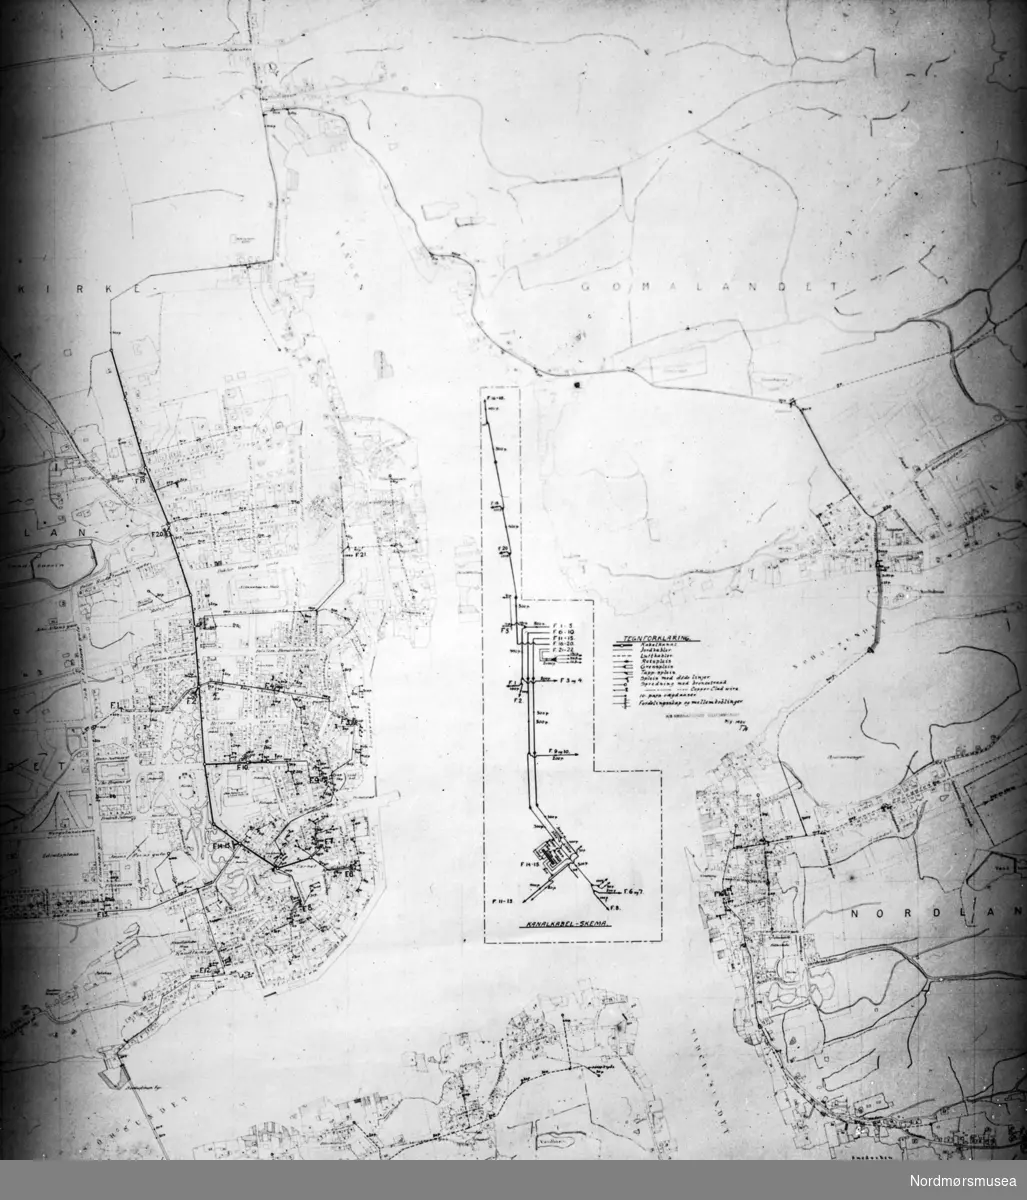 Telefonkabler. Grøfter og stolper. Kart over Kristiansund. Fra Nordmøre museums fotosamlinger.